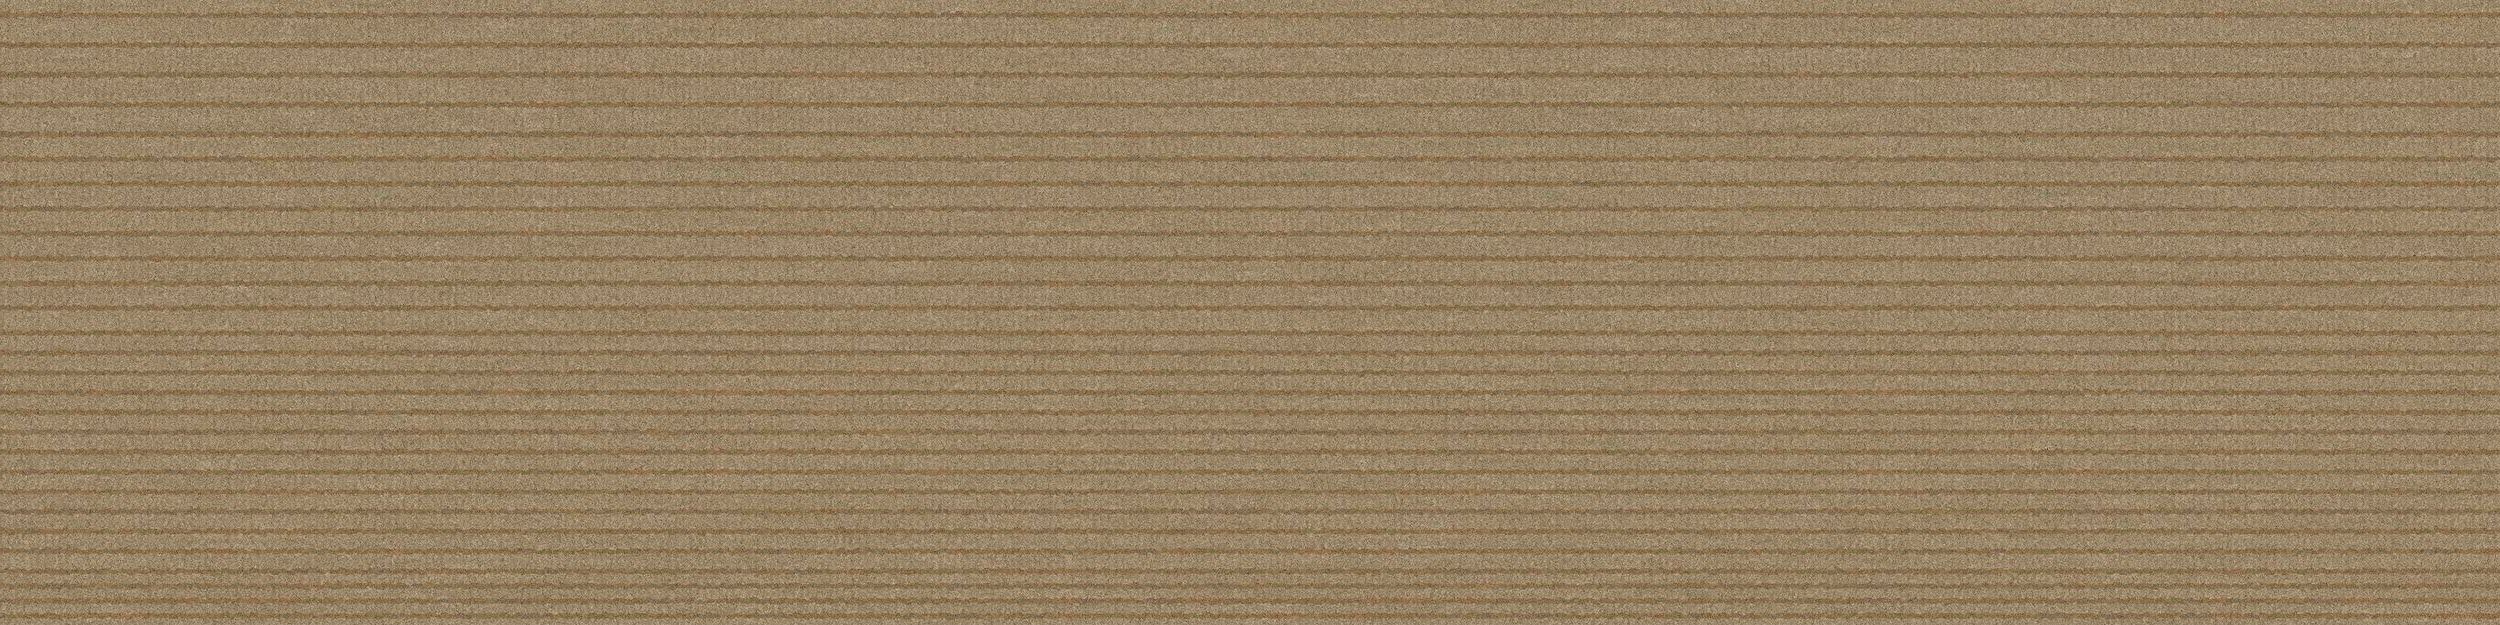 B703 Carpet Tile In Sand image number 2